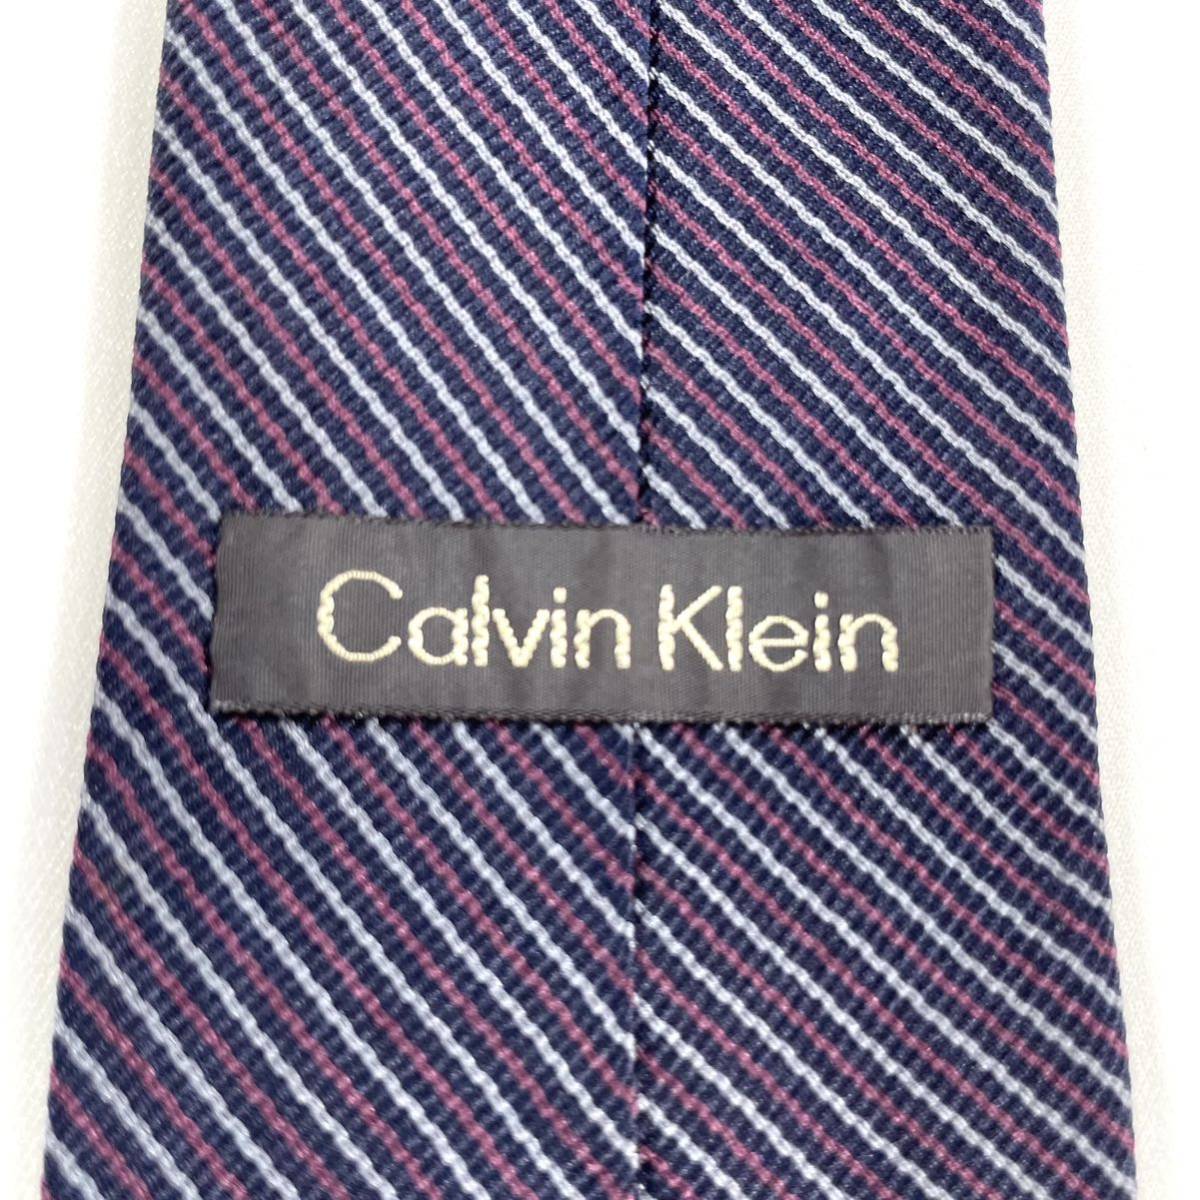 Calvin Klein カルバン クライン 人気ブランド オシャレ ストライプ